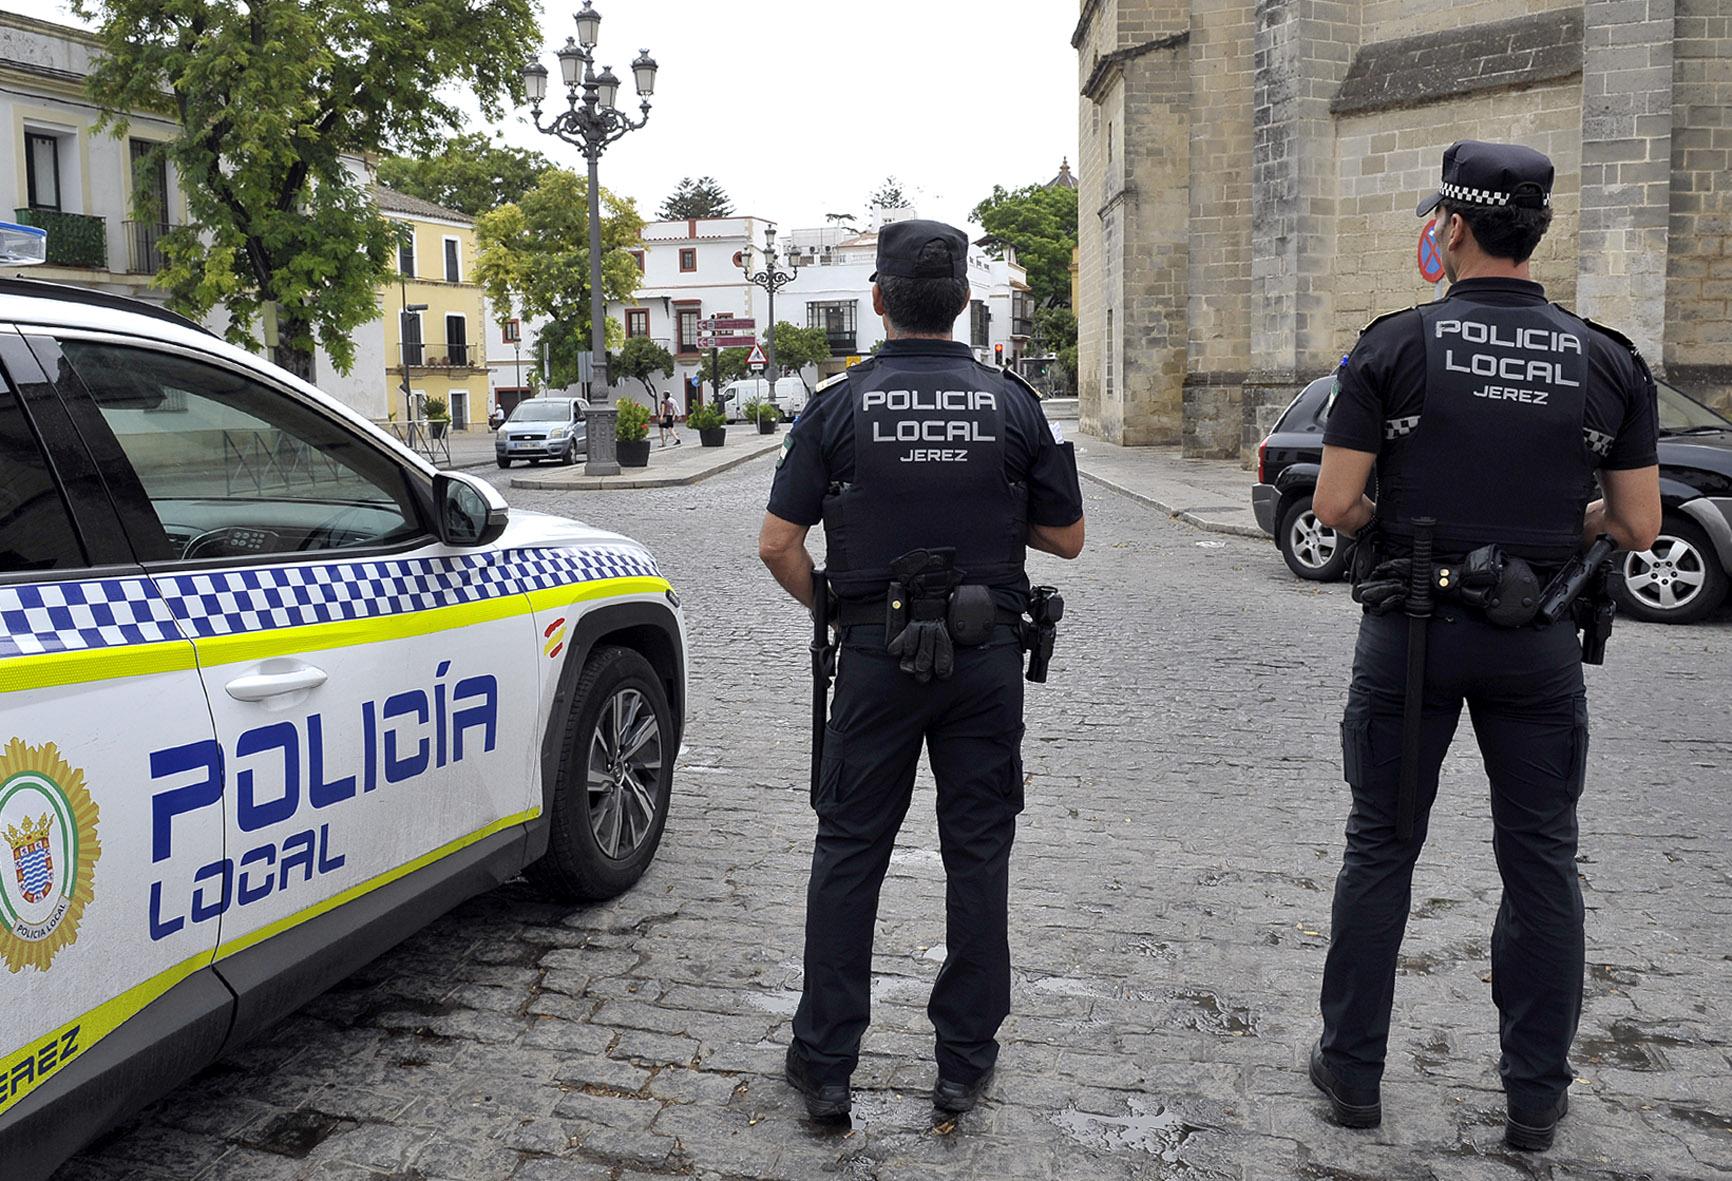 La Policía Local de Jerez detiene a una persona reclamada judicialmente y otra por incumplir una orden de alejamiento